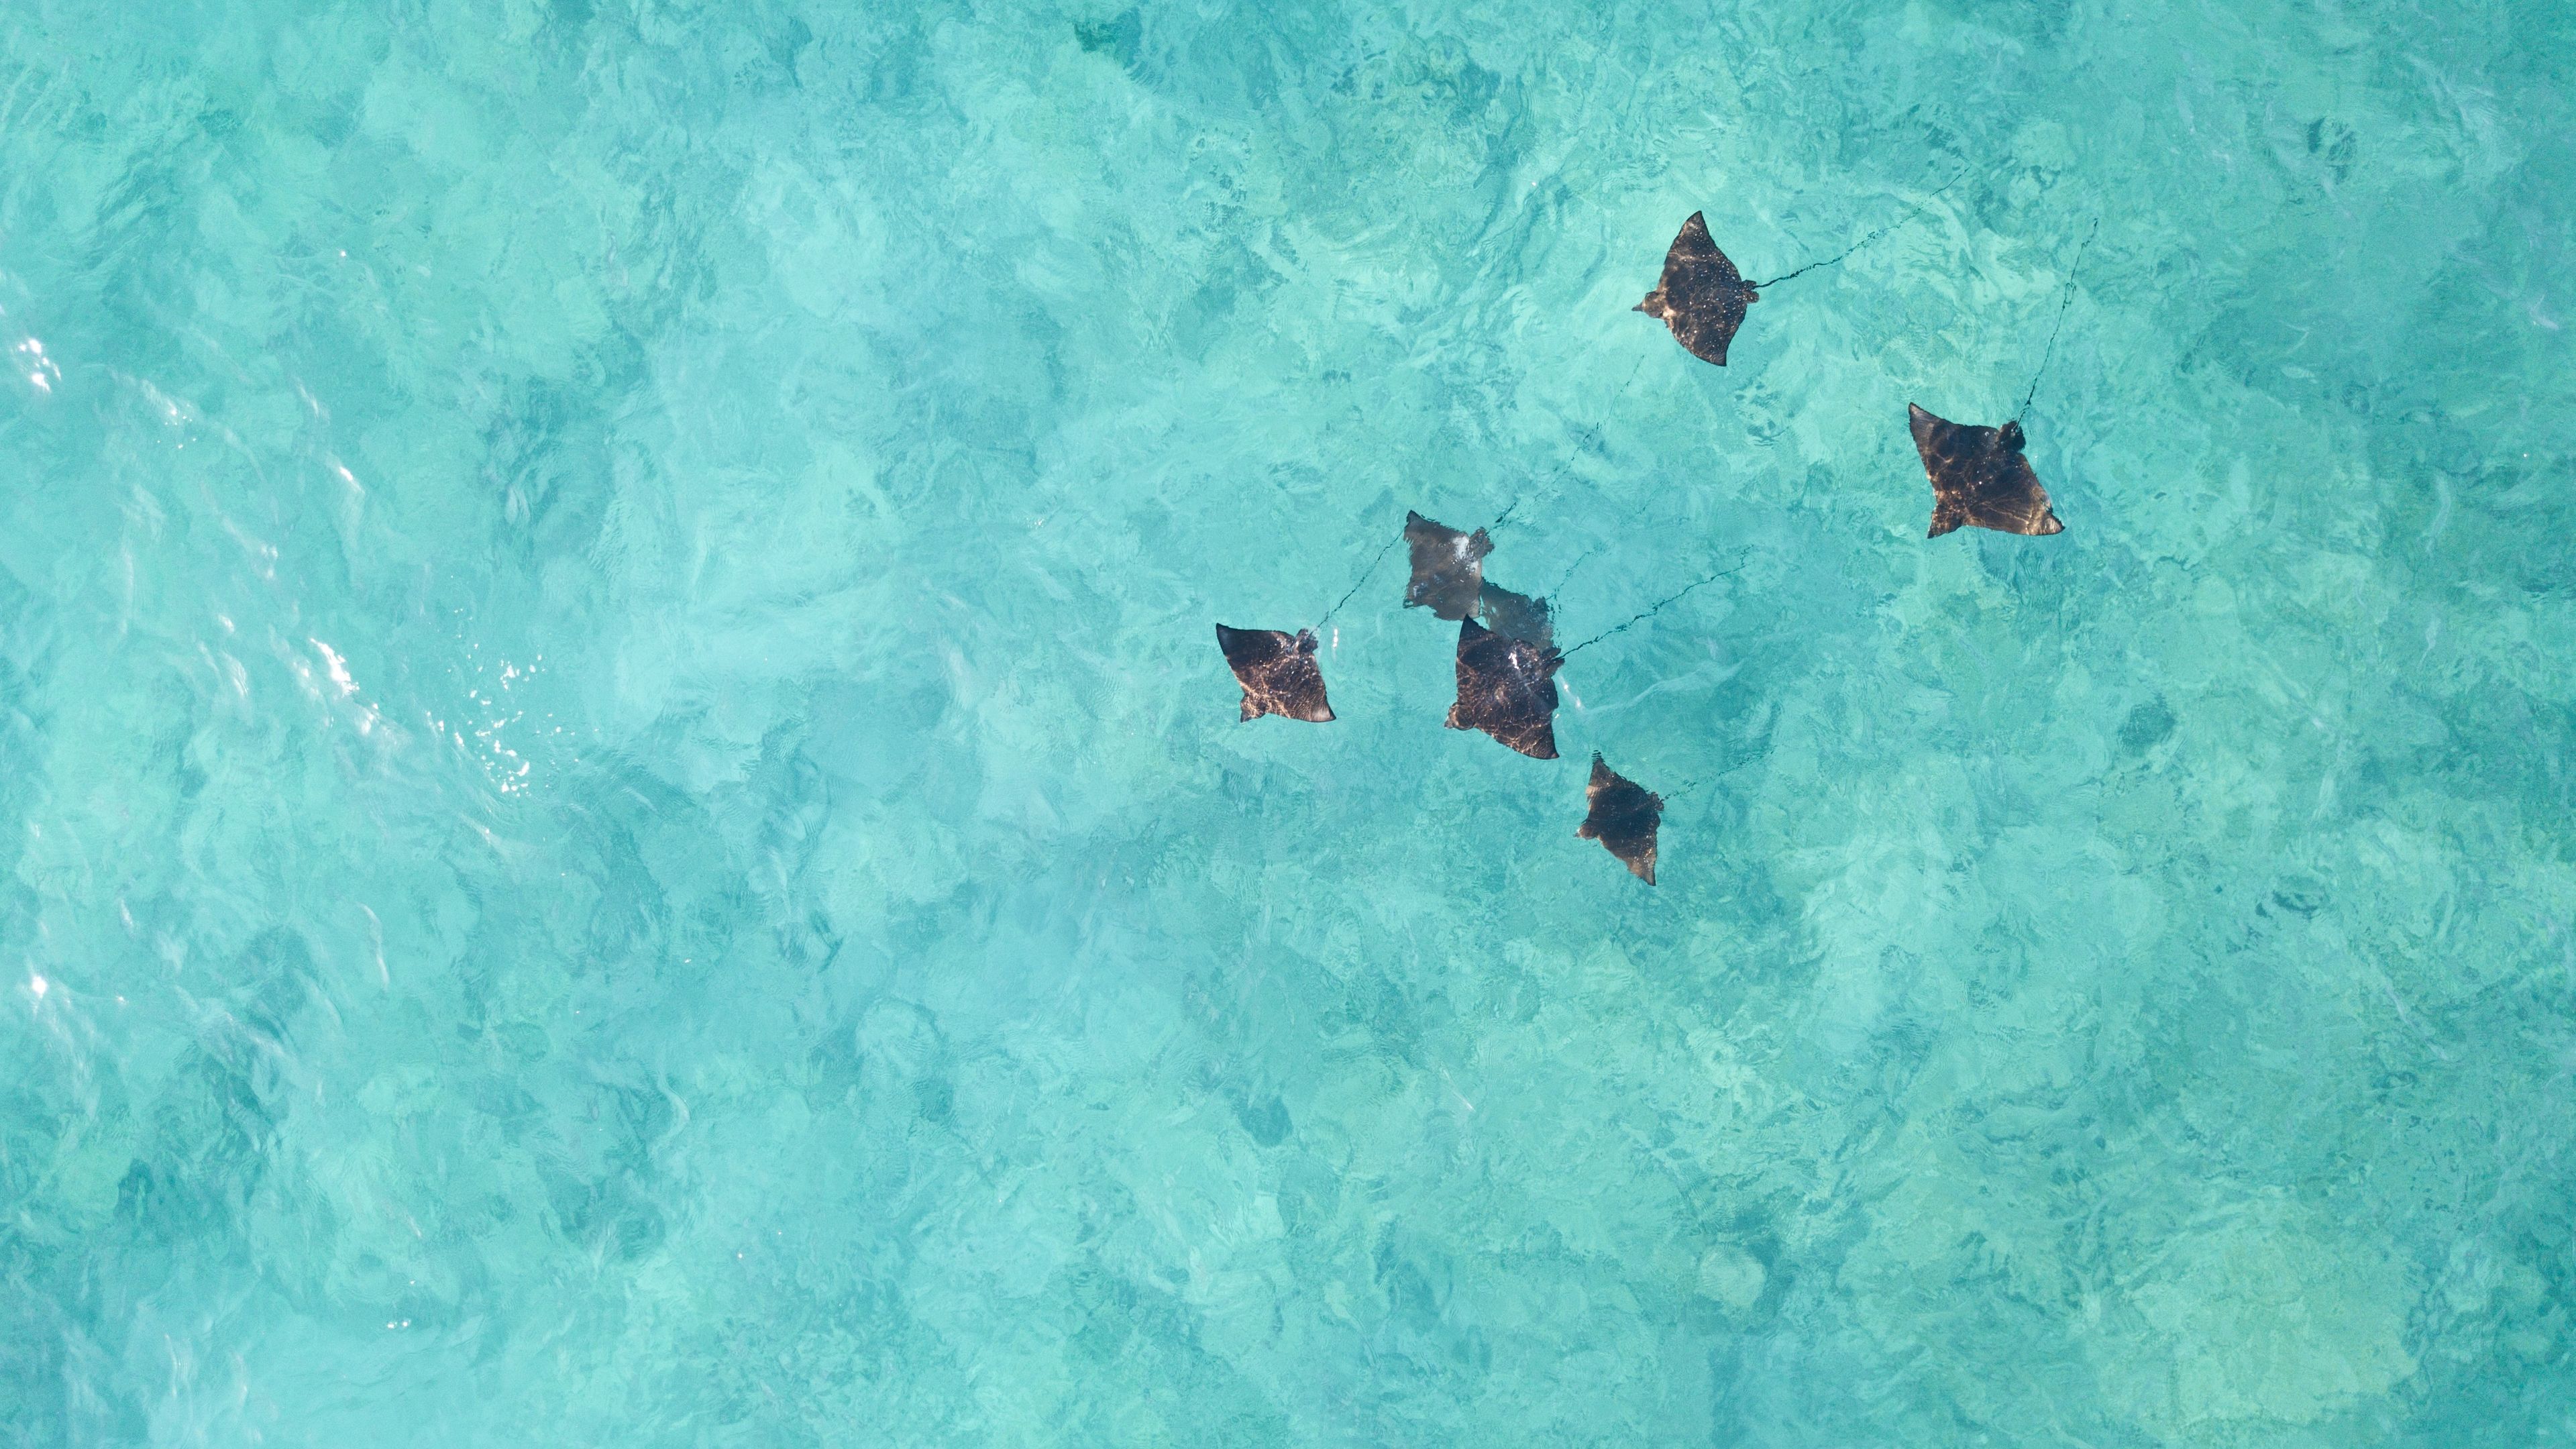 Eine Drohnen Aufnahme zeigt eine Vielzahl rochen im tuerkisblauen Wasser der Seychellen